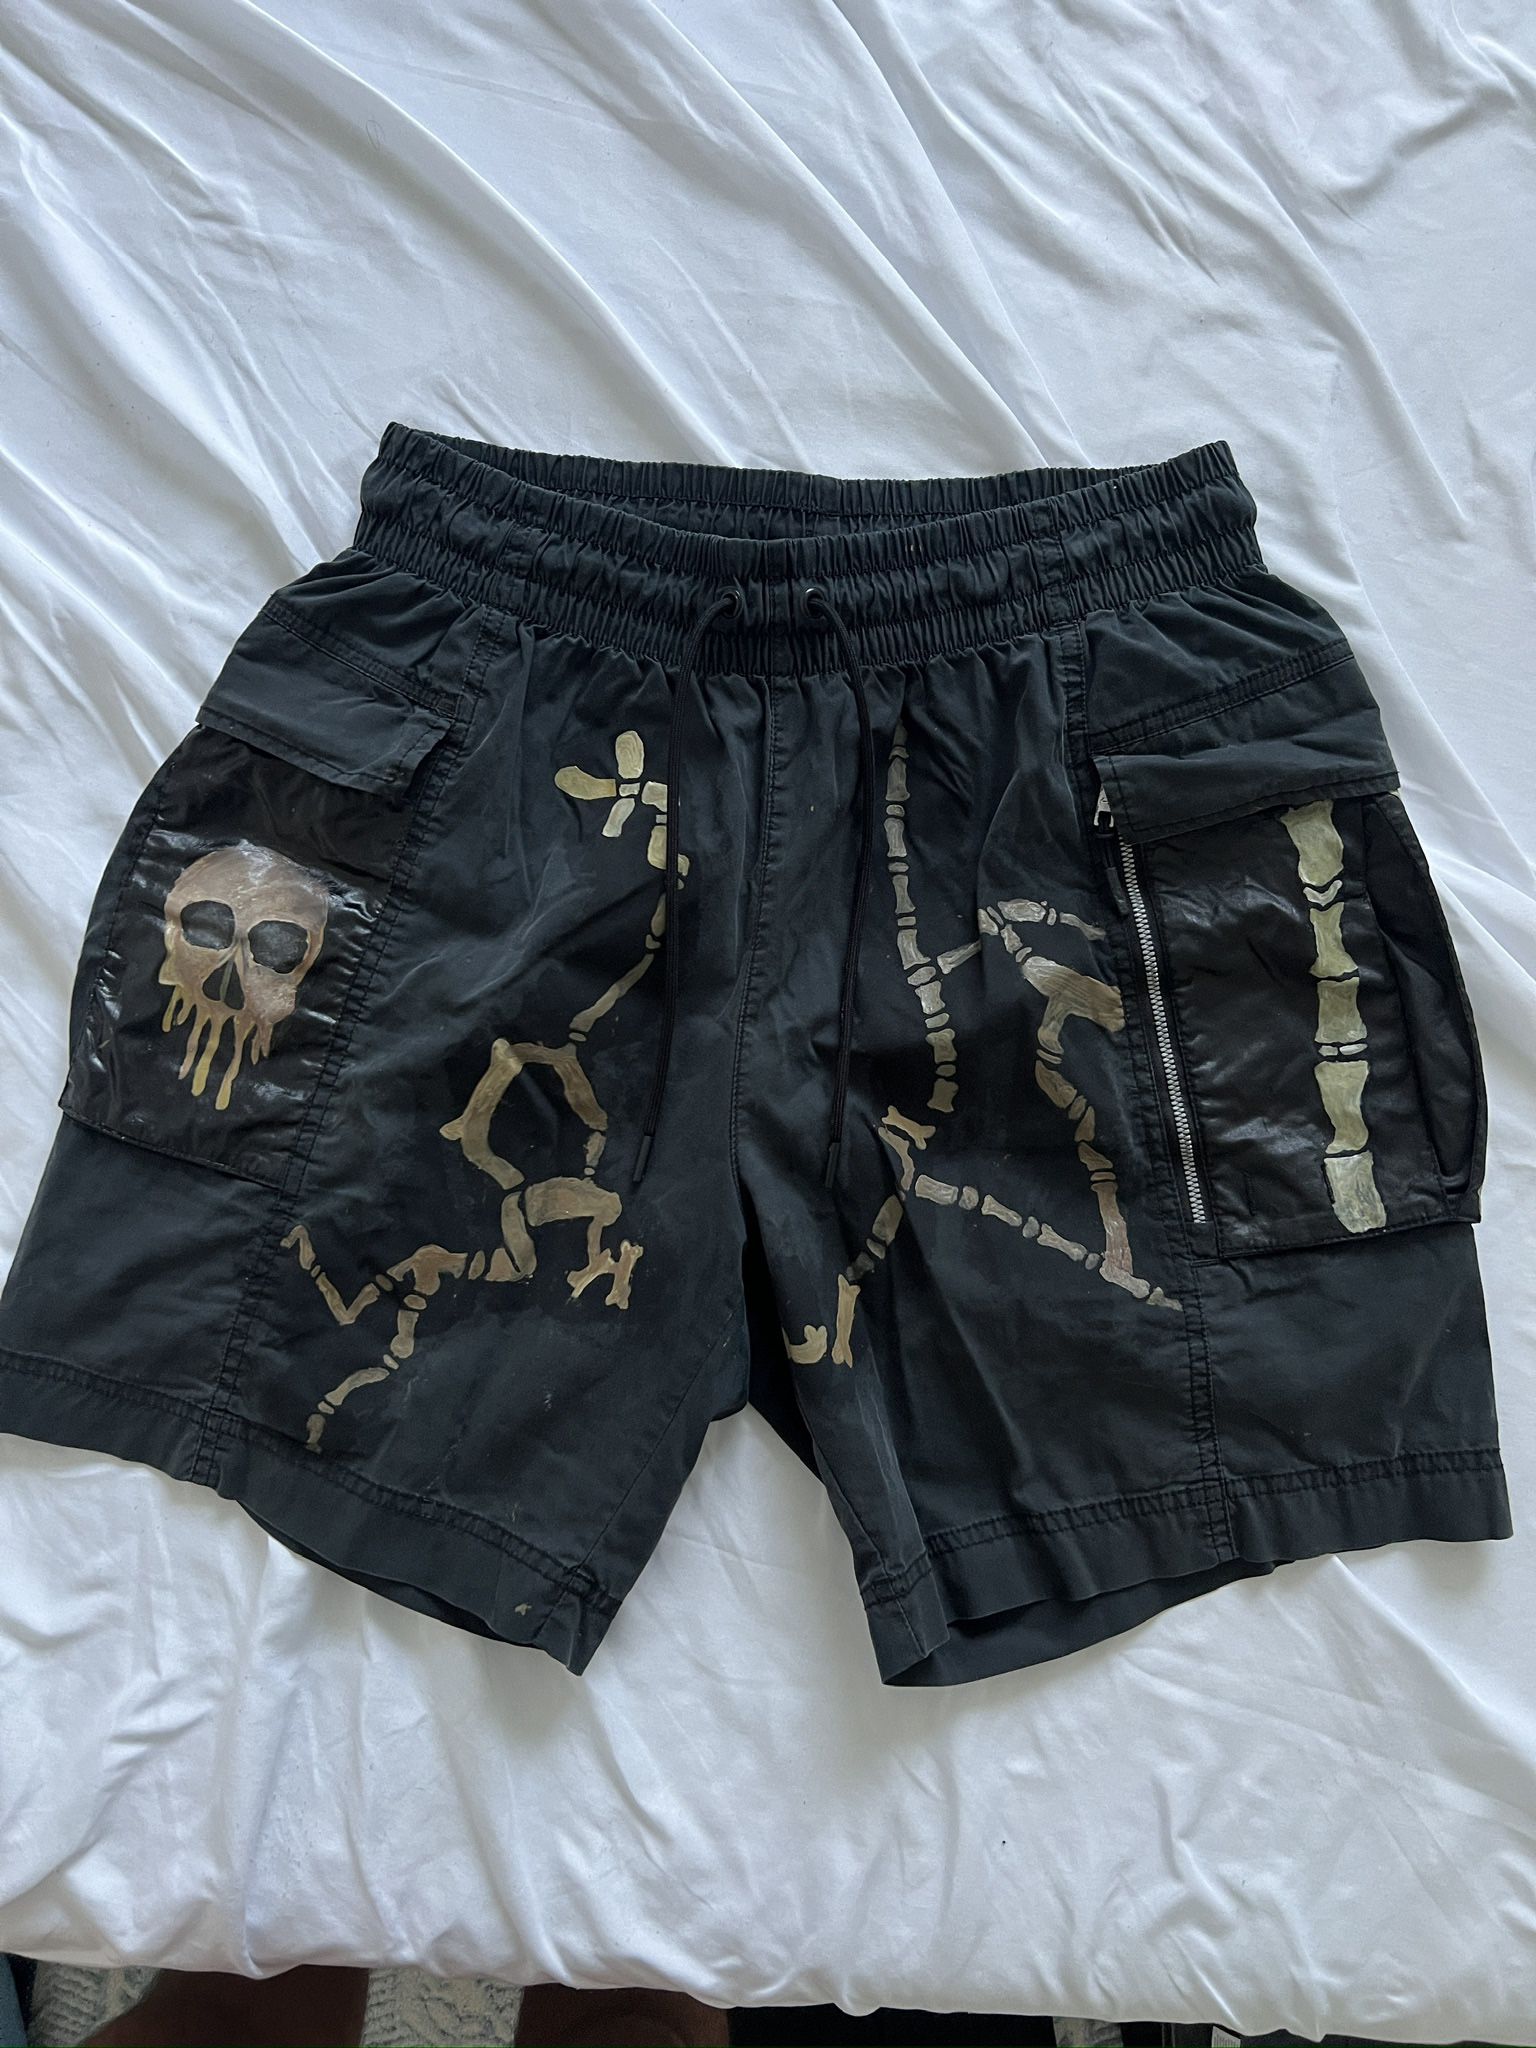 Vintage faded, black cargo shorts, Nike size large skulls